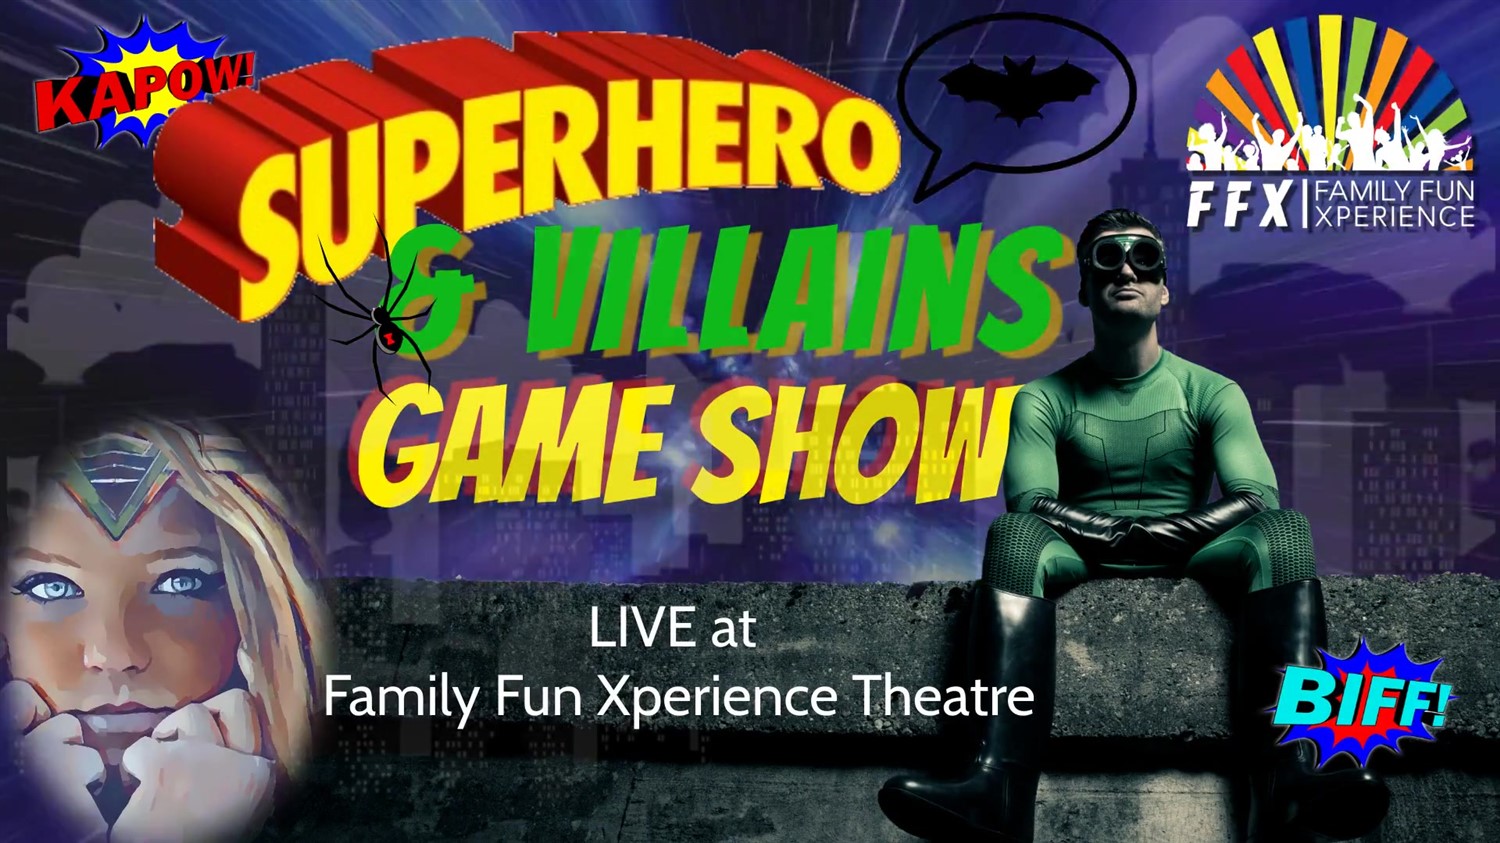 Superheroes & Villains: LIVE GAME SHOW!  on mai 31, 19:00@FFX Theatre - Achetez des billets et obtenez des informations surFamily Fun Xperience tickets.ffxshow.org